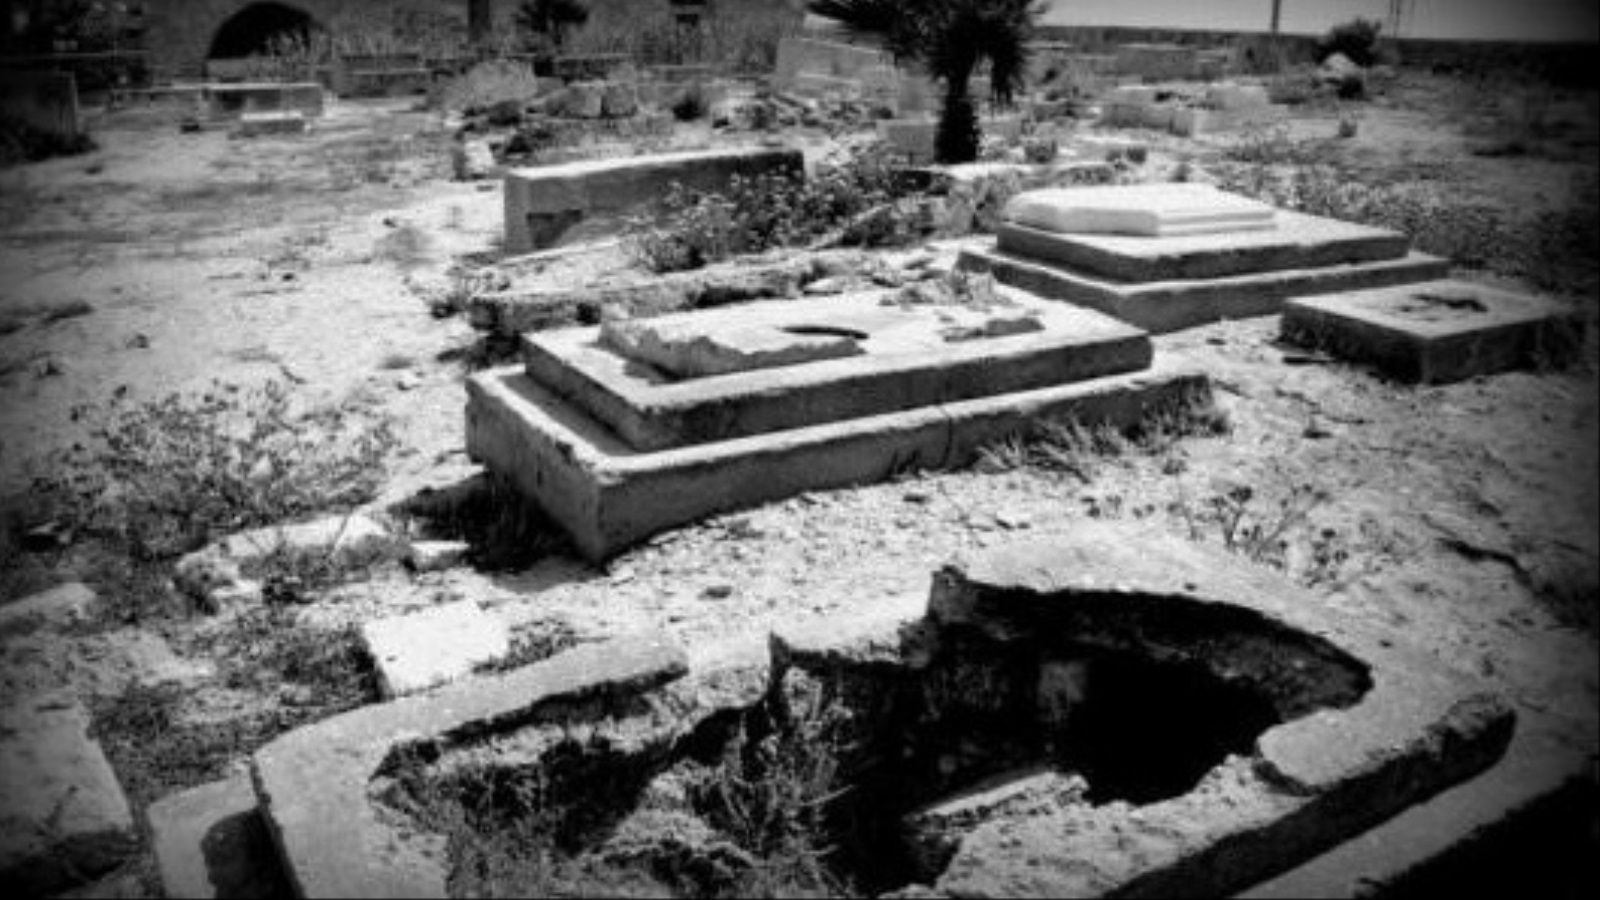 ينتهي الفيلم في مقبرة عبد النبي، حيث تم بناء فندق هيلتون في تل ابيب فوق مُعظم أراضي المقبرة، مع مشاهد تمثيلية من وحي مذكرات يوسف هيكل